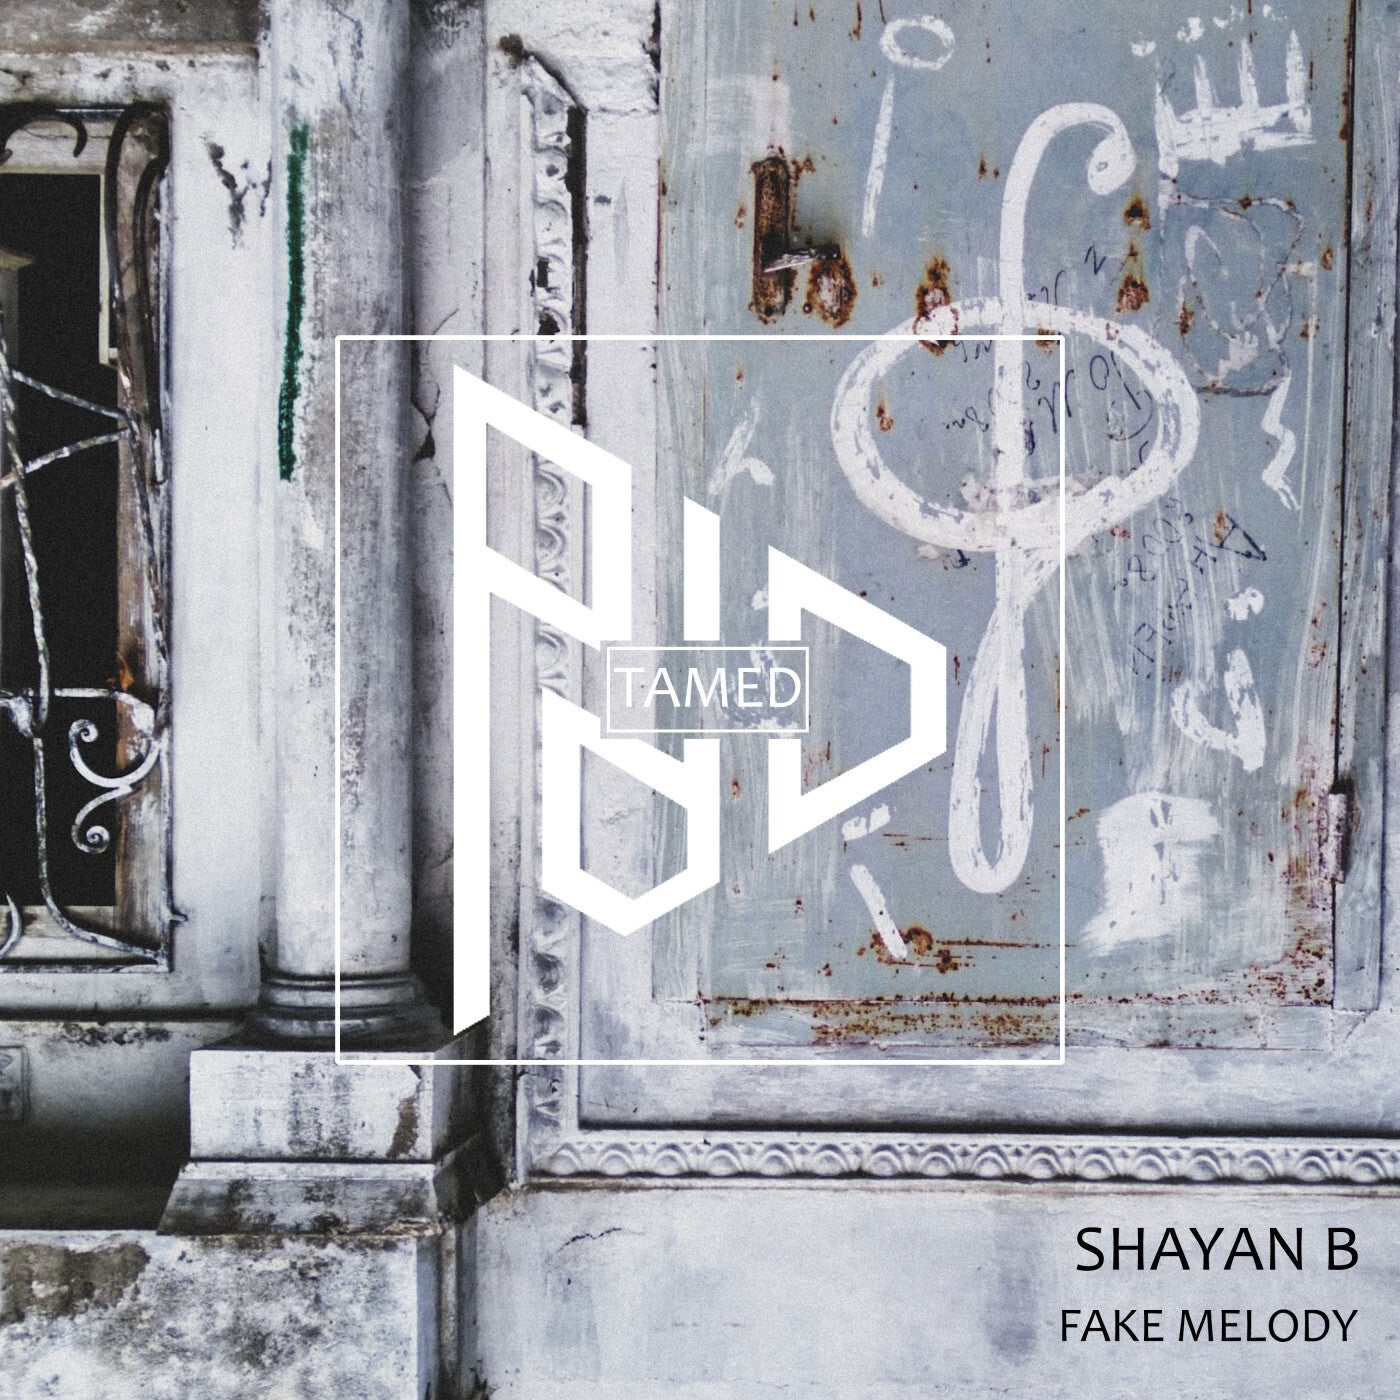 Shayan B – Fake Melody [TAMED079]